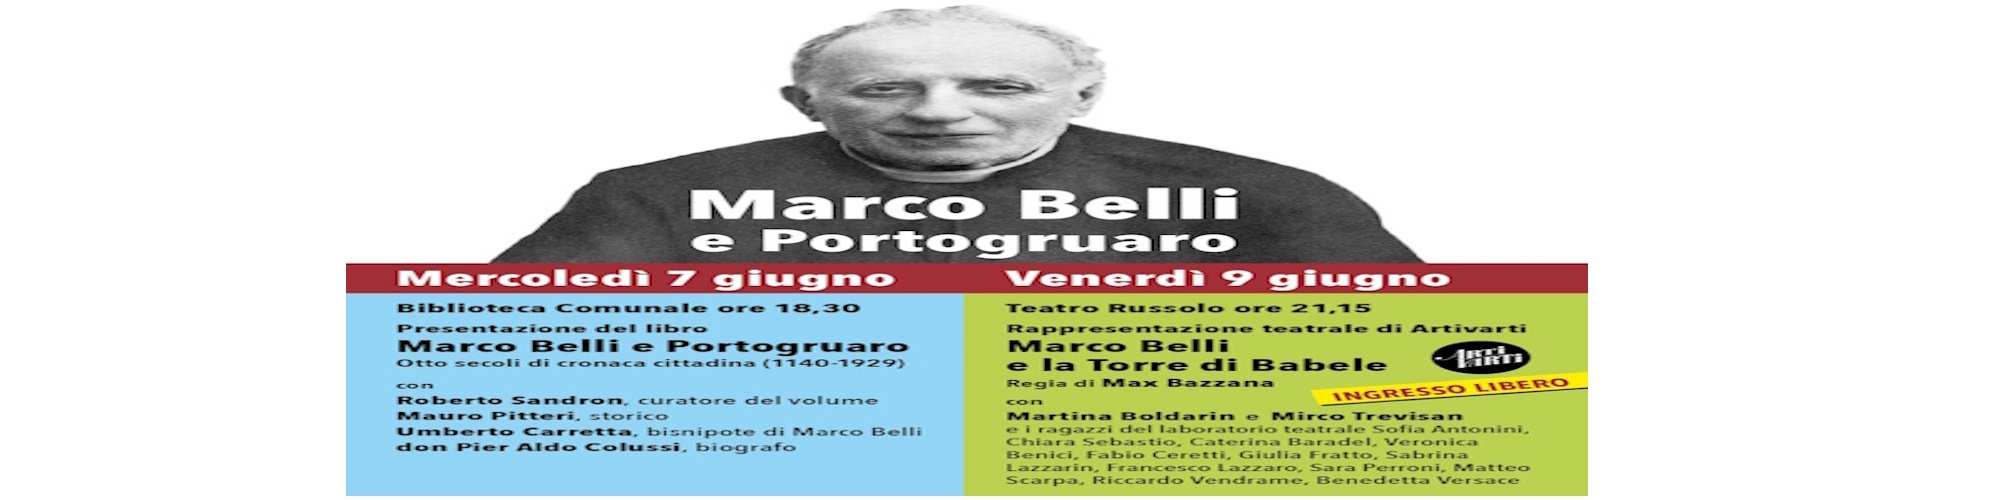 Immagine Marco Belli e Portogruaro  - Presentazione libro